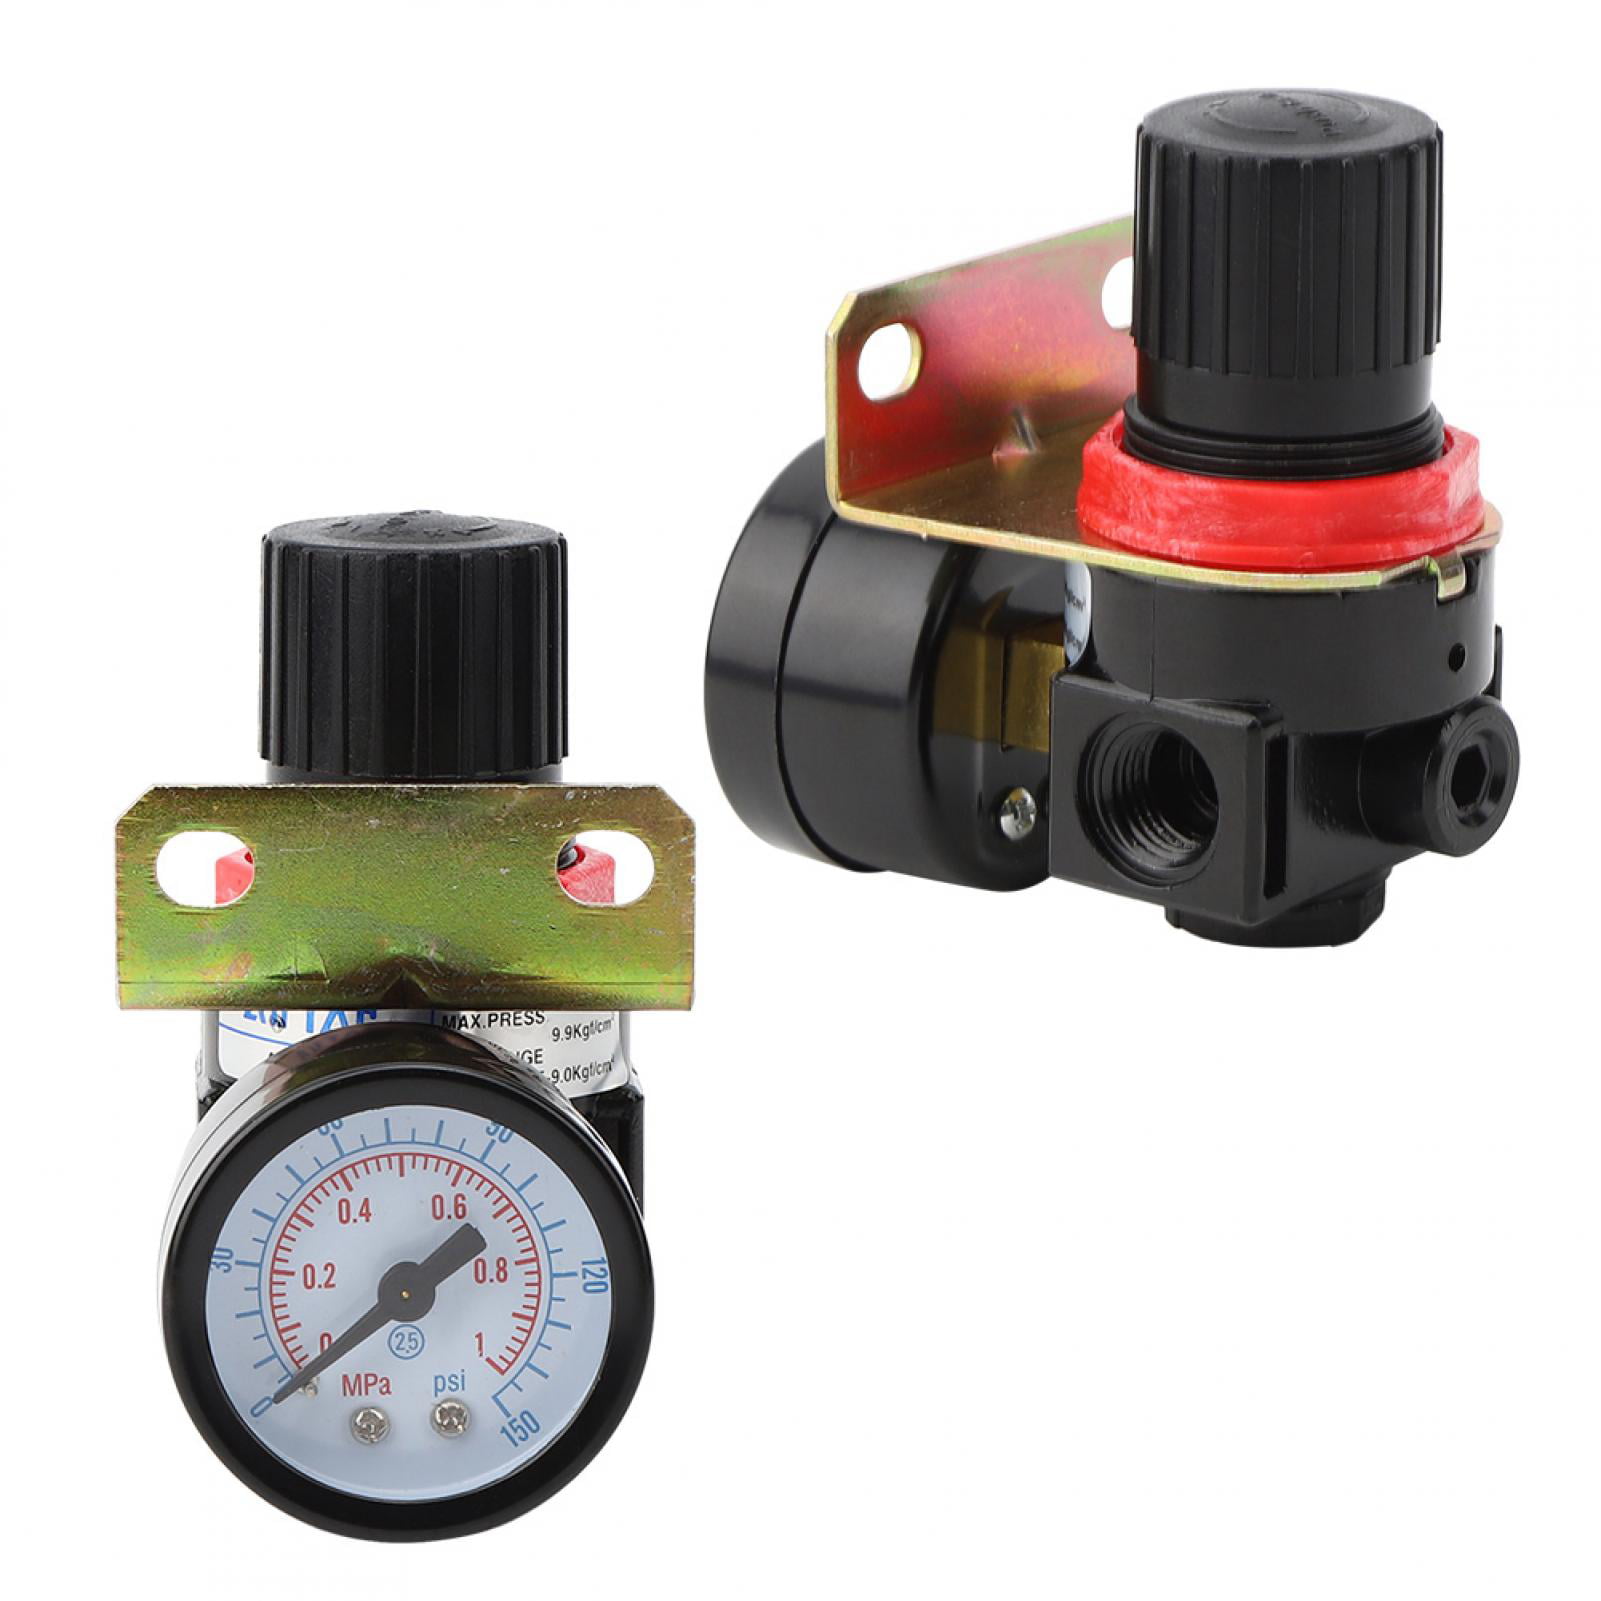 Pumps & Plumbing 1 Piece Pneumatic Source Treatment Air Filter Pressure Regulator AR2000 